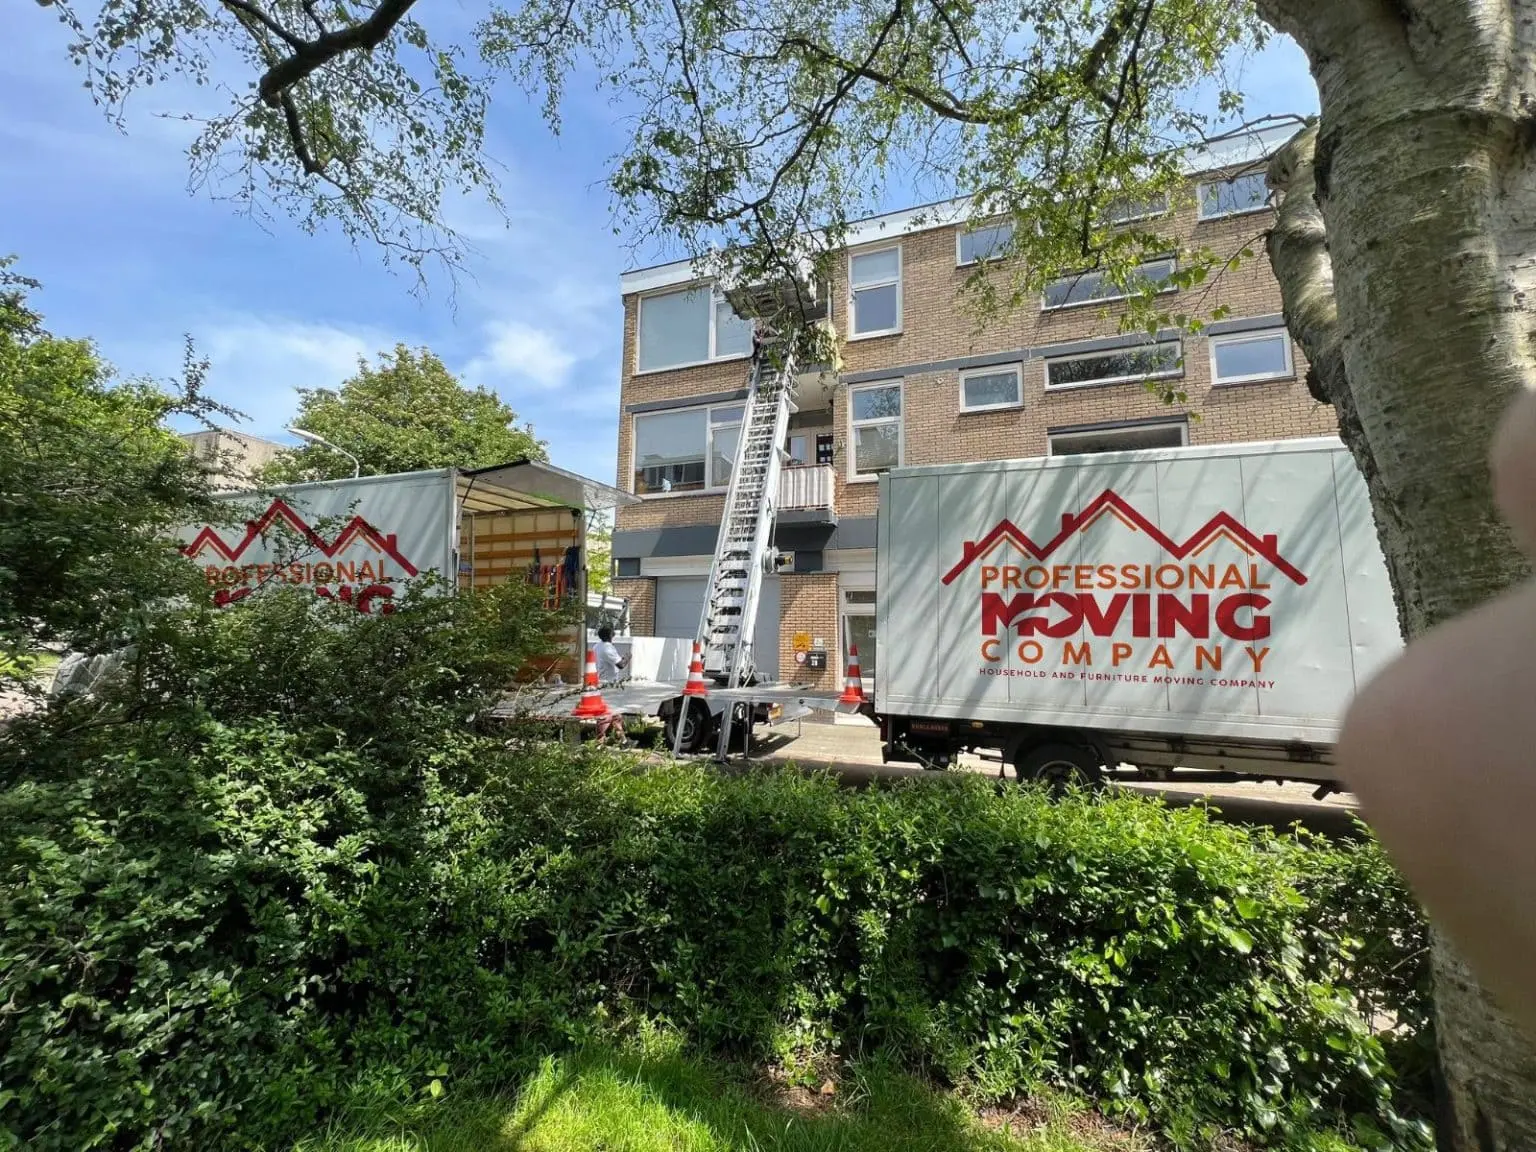 Our Comprehensive Moving Services in Noordwijk | Moving Company Noordwijk